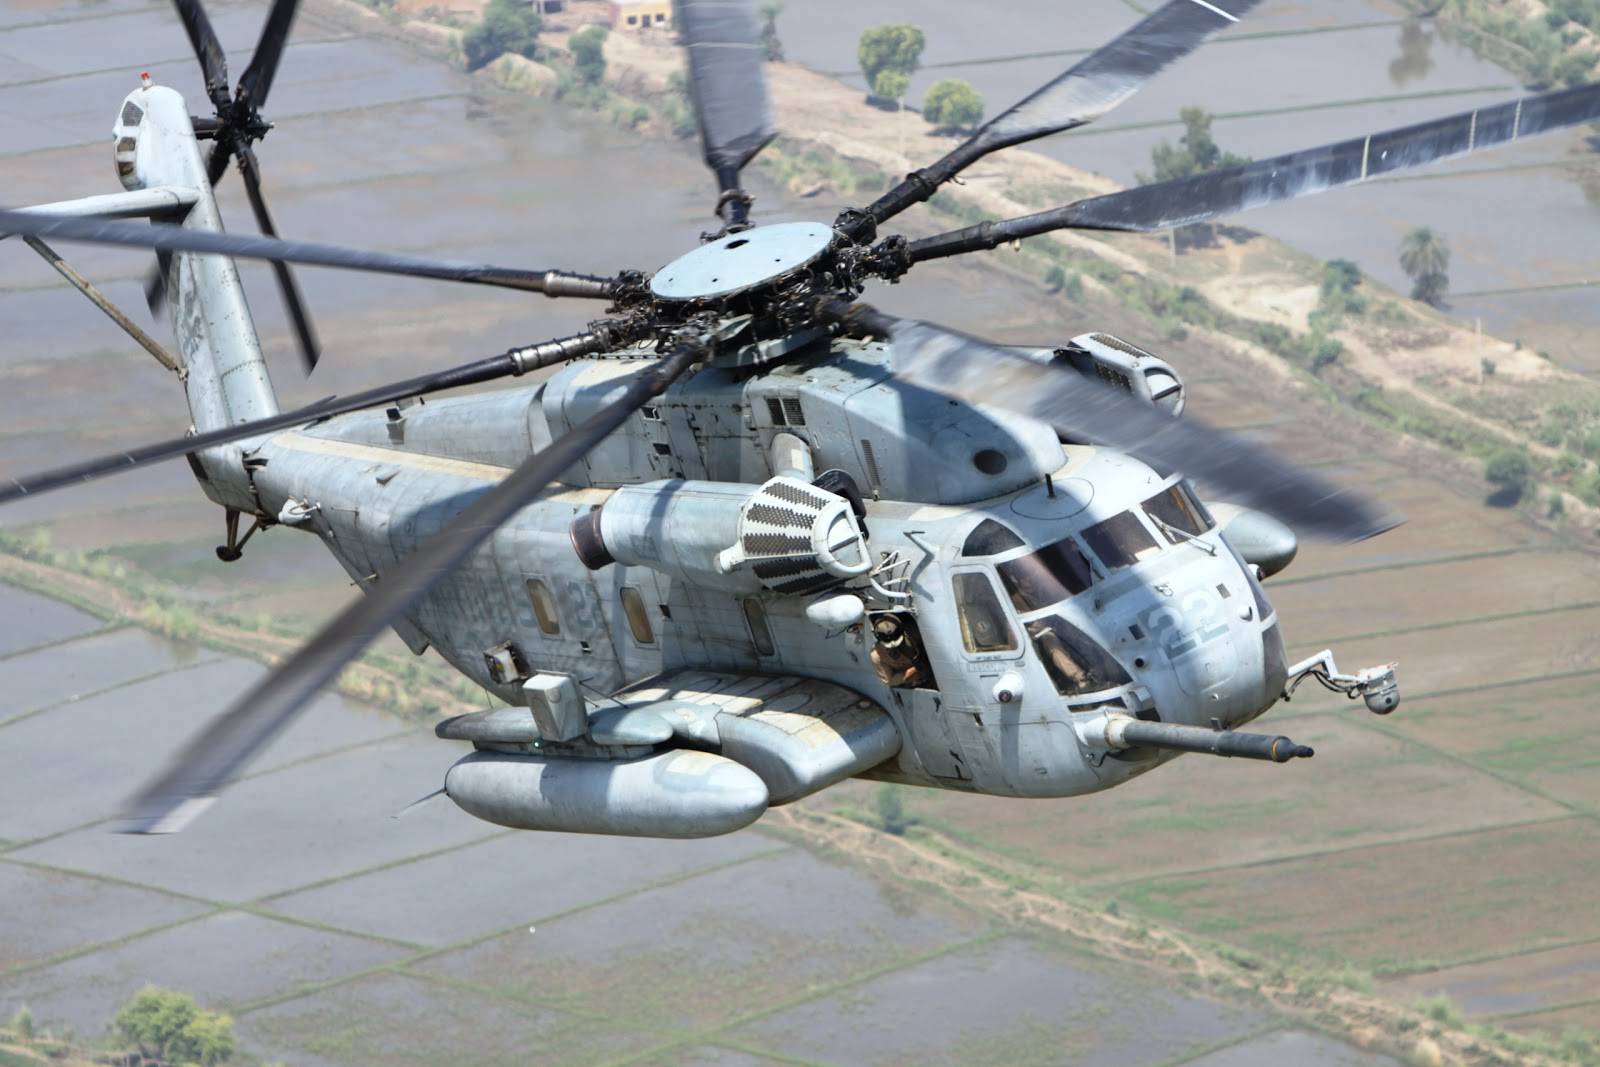 原创超级种马直升机性能不凡,采购费用飙升,连f-35都甘拜下风!